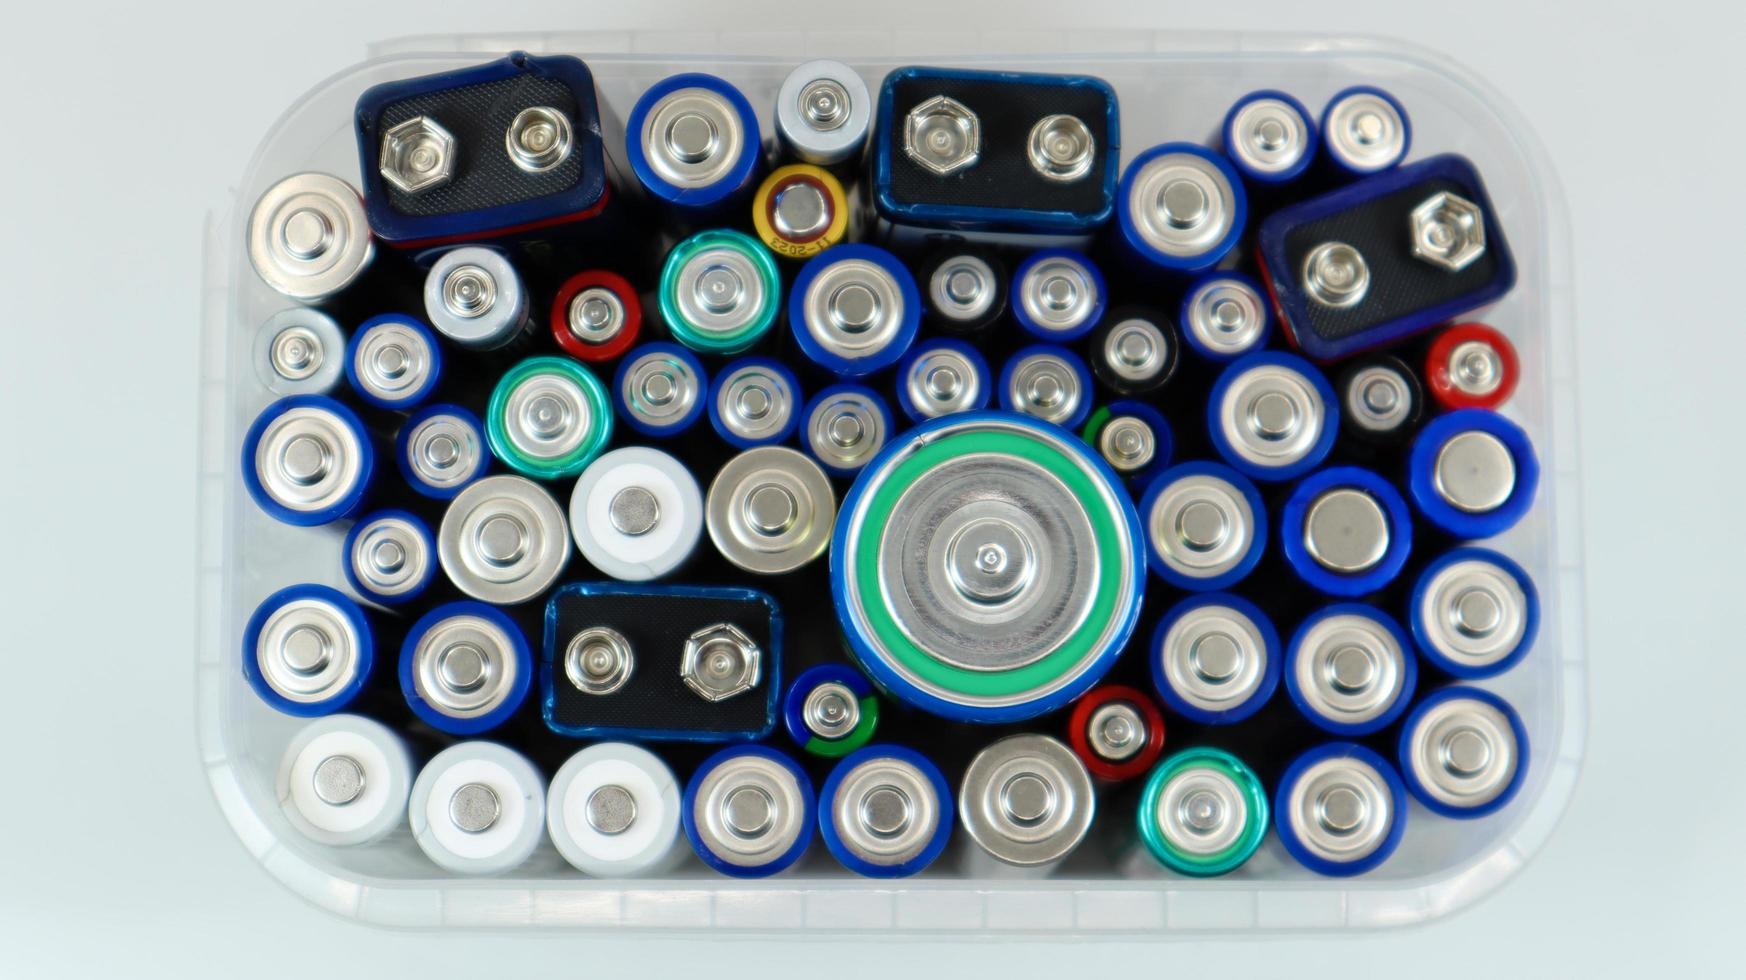 doorzichtige plastic doos vol gebruikte huishoudelijke AA-alkaline- en lithium-ionbatterijen verzameld voor recycling in speciale afvalbakken. recycling en ecologische problemen. uitzicht van boven foto